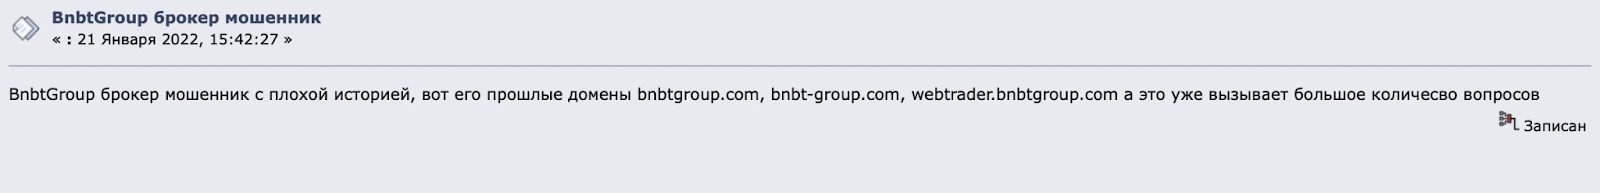 Bnbtgroup: отзывы осведомленных трейдеров. Результаты проверки сайта